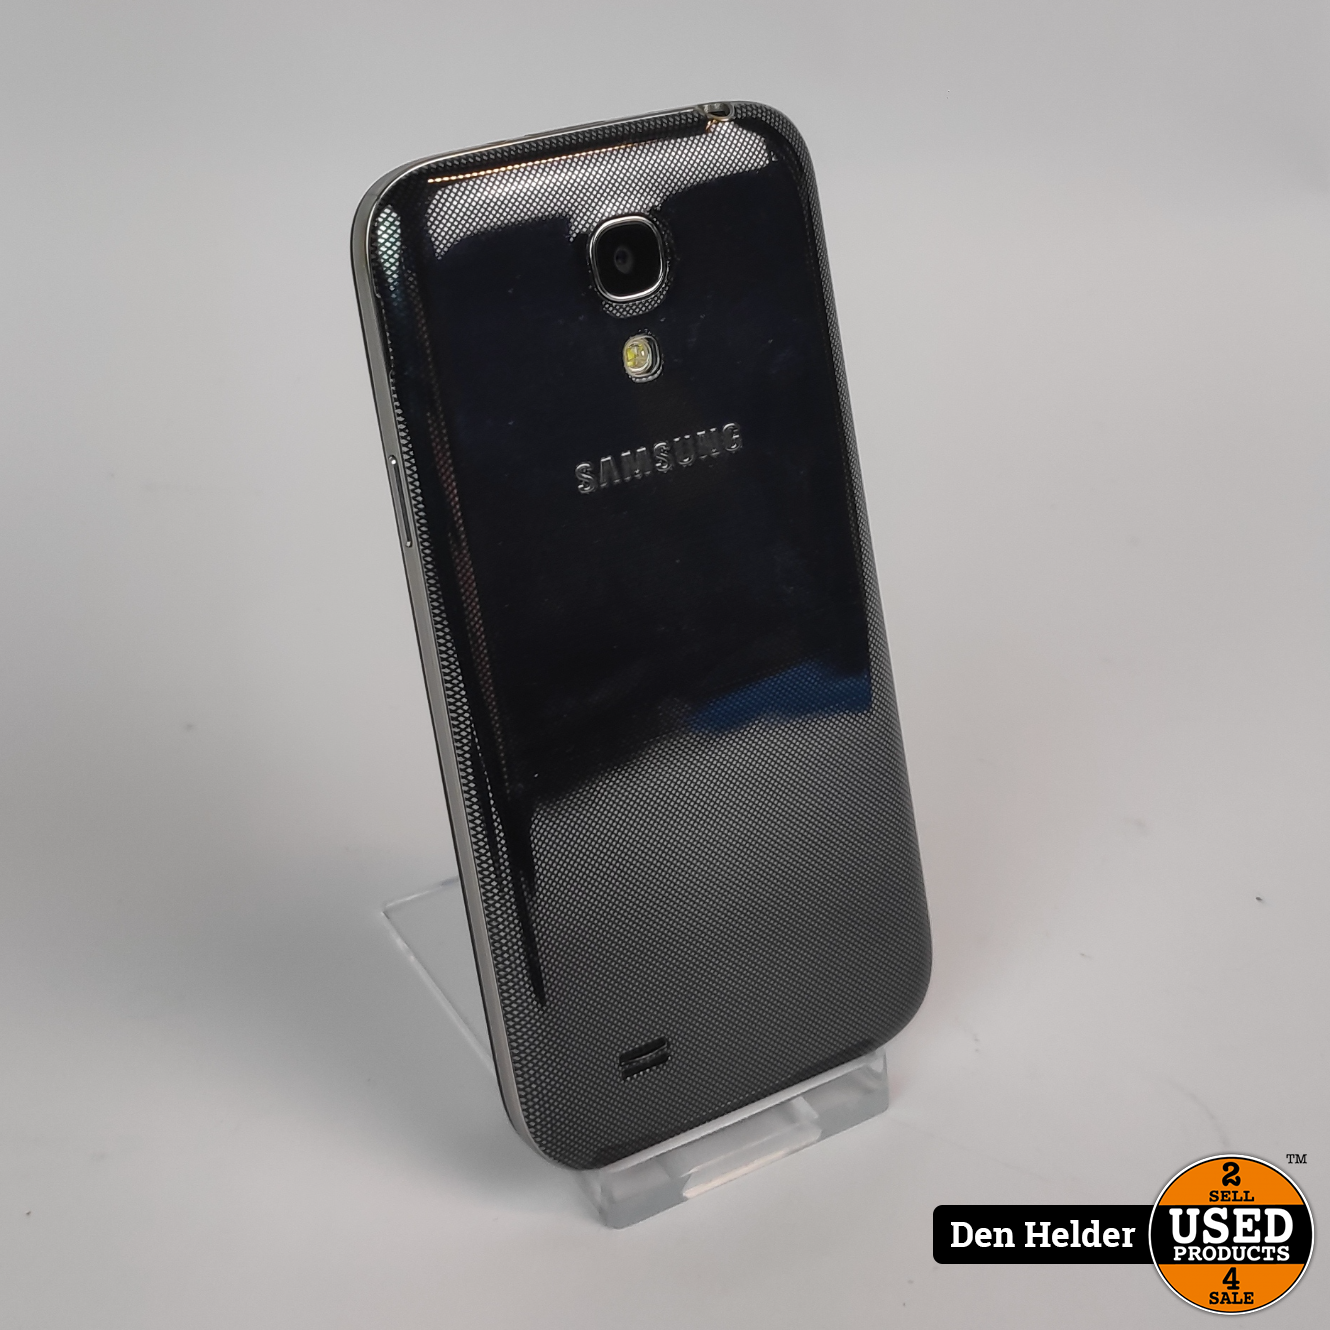 Afhankelijk Chinese kool Gezichtsvermogen Samsung Galaxy S4 Mini 16GB Android 5 - In Goede Staat - Used Products Den  Helder